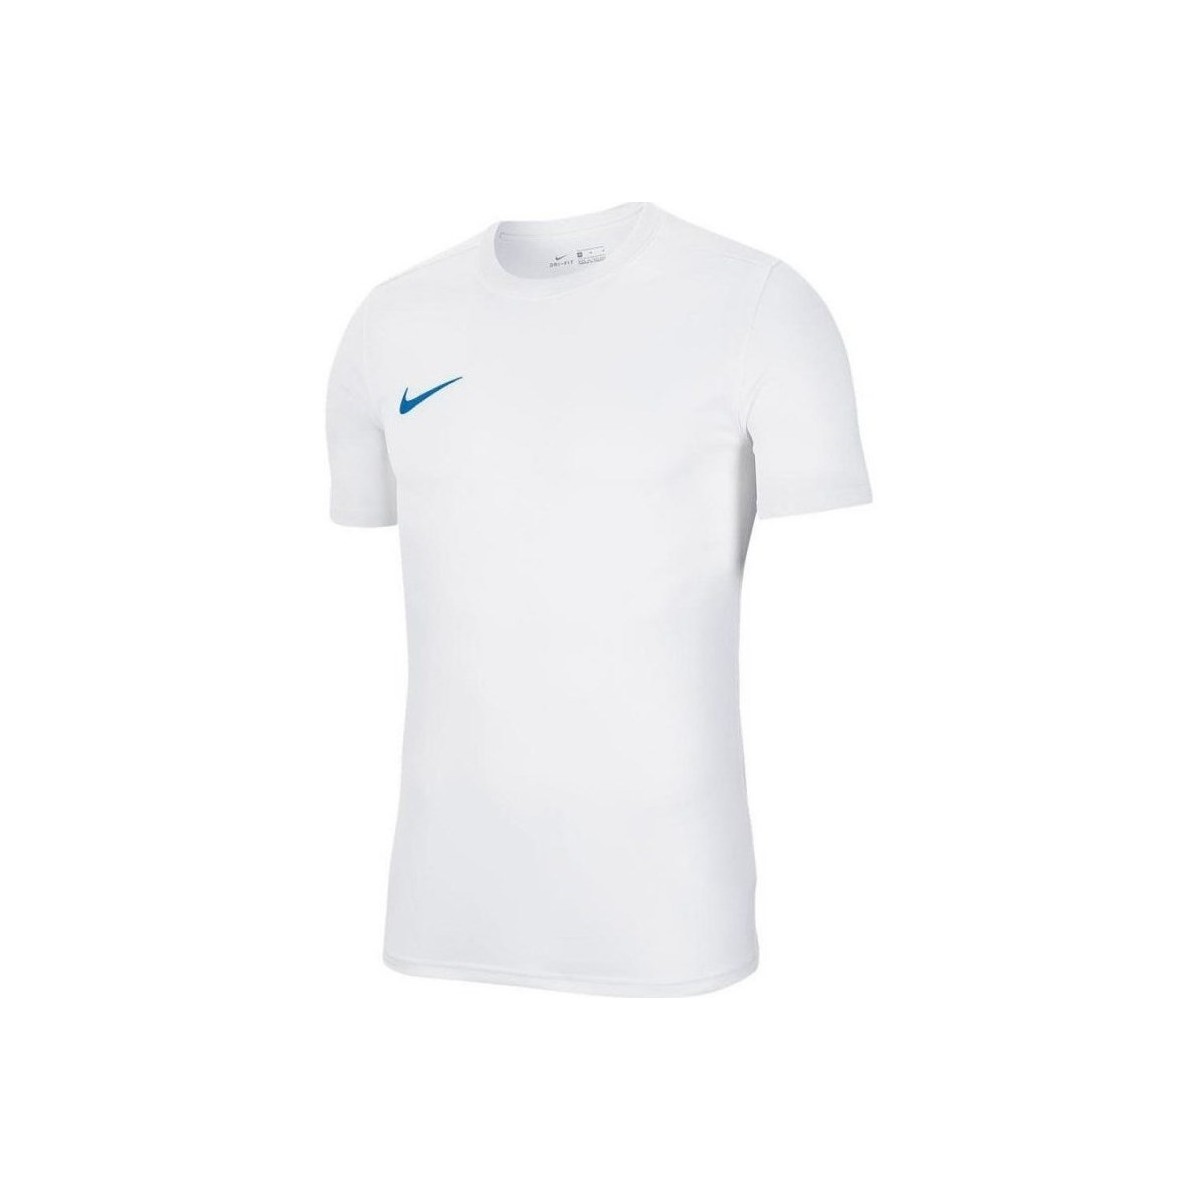 Kleidung Herren T-Shirts Nike Park Vii Weiss